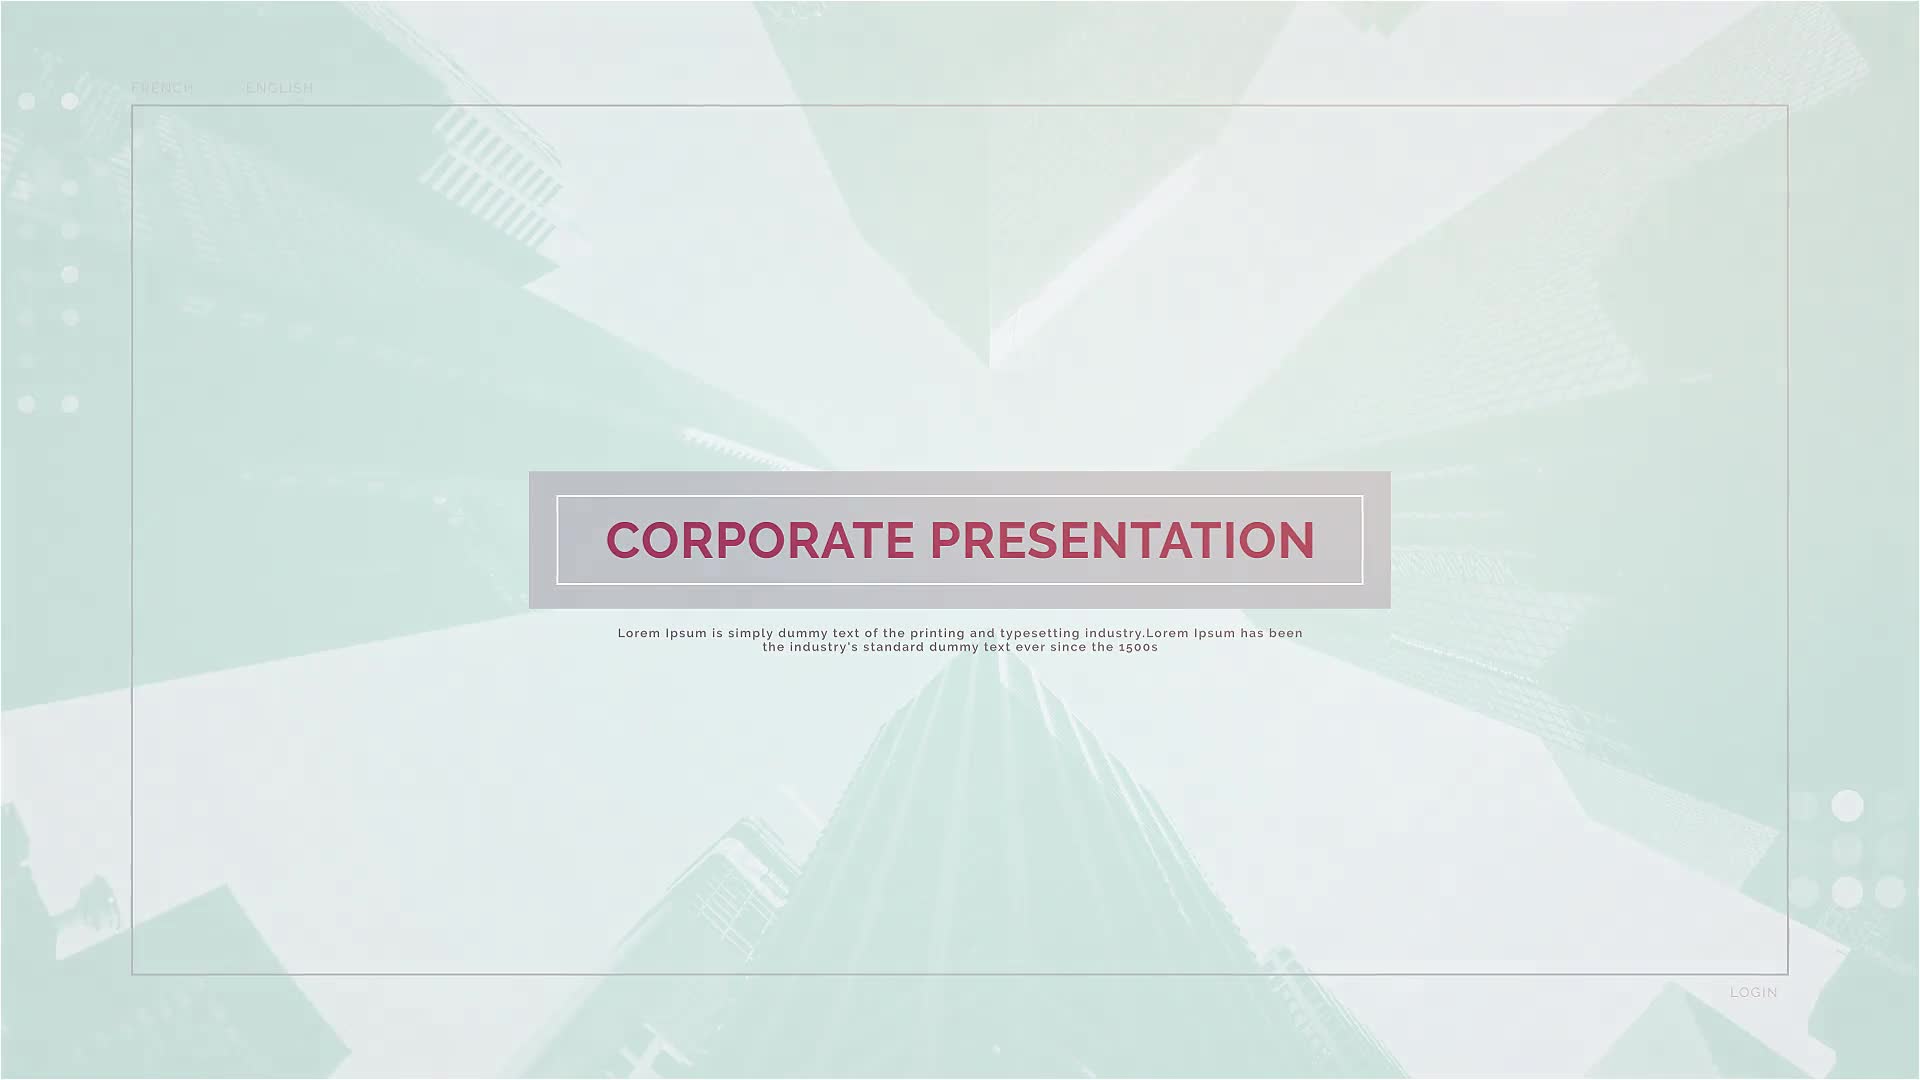 Corporate Presentation Portfolio Slideshow Videohive 33119956 Premiere Pro Image 12